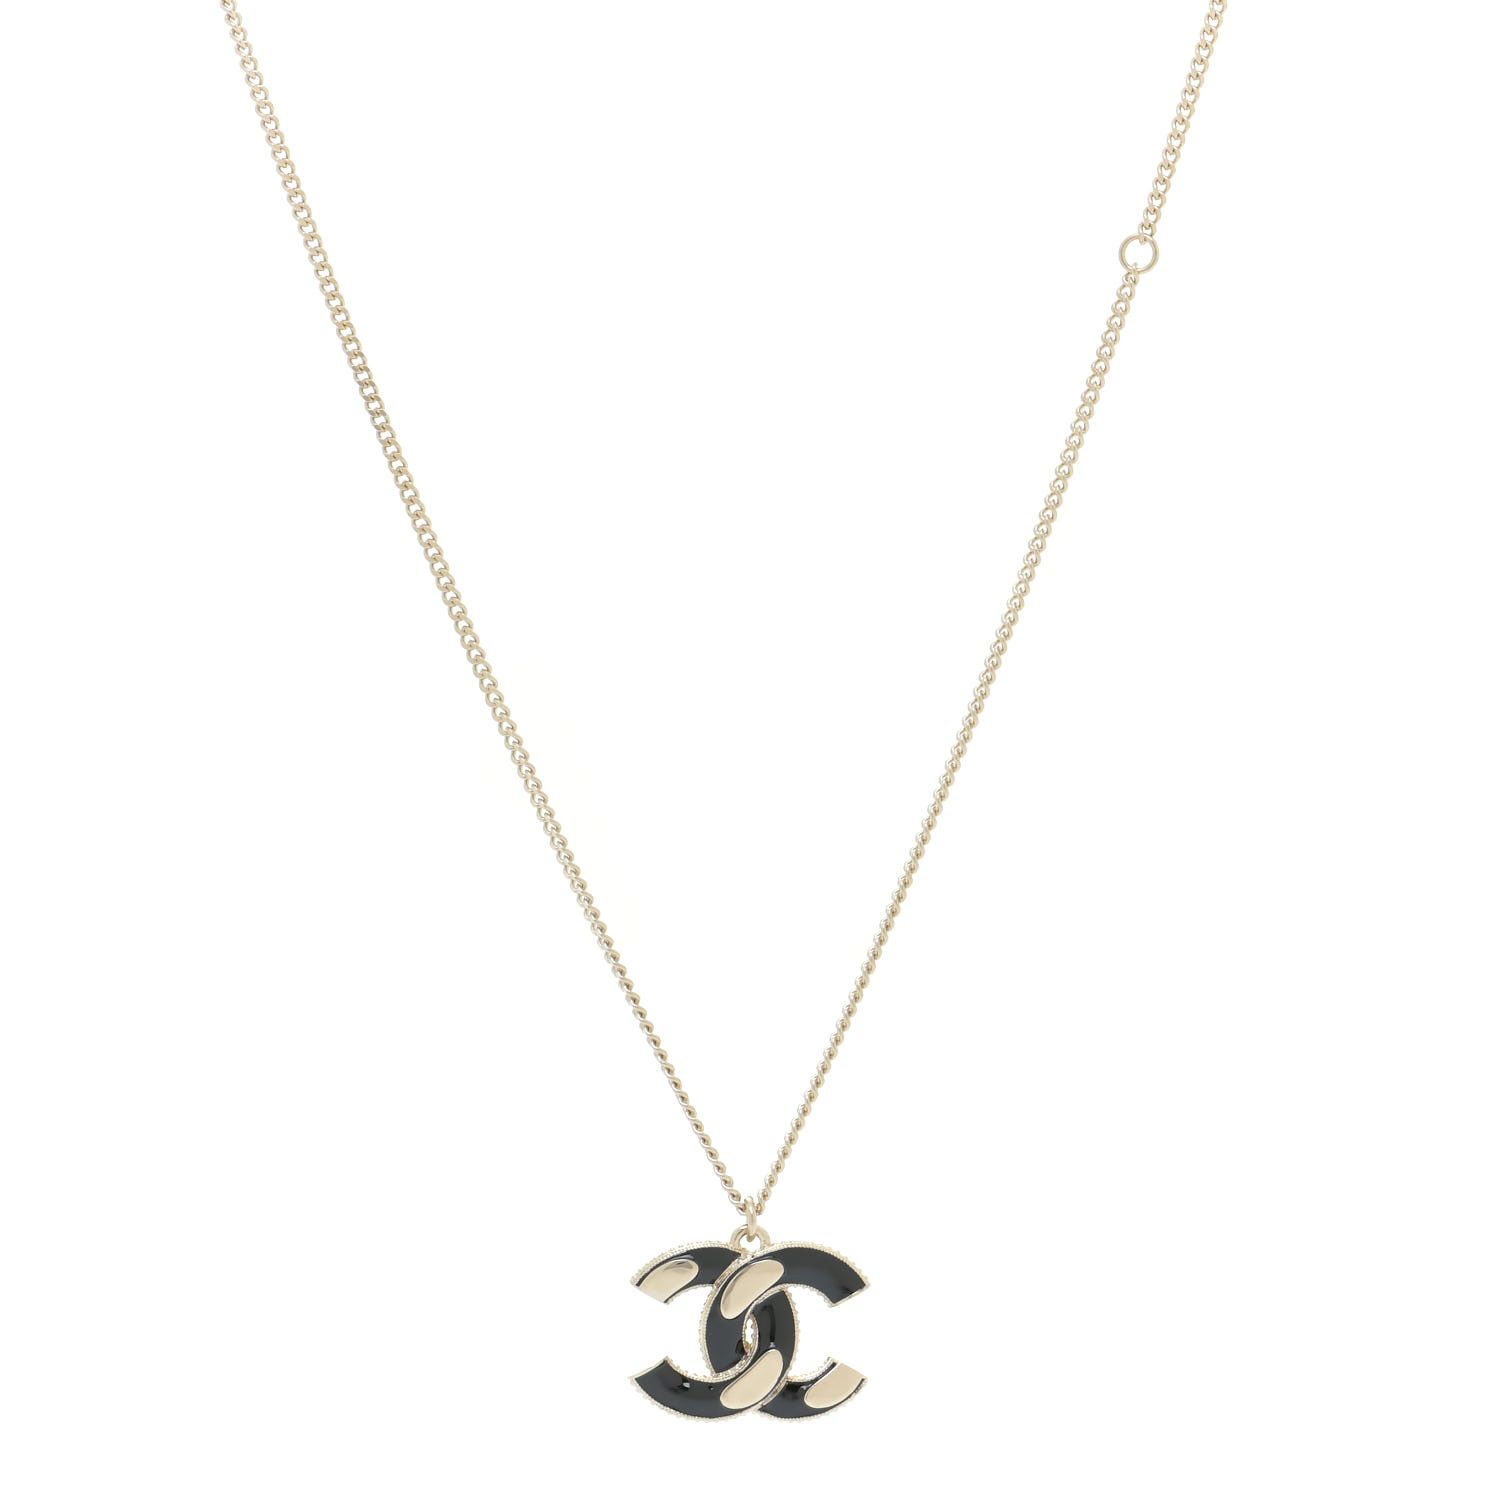 CHANEL

Enamel CC Pendant Necklace Black Light Gold | Fashionphile